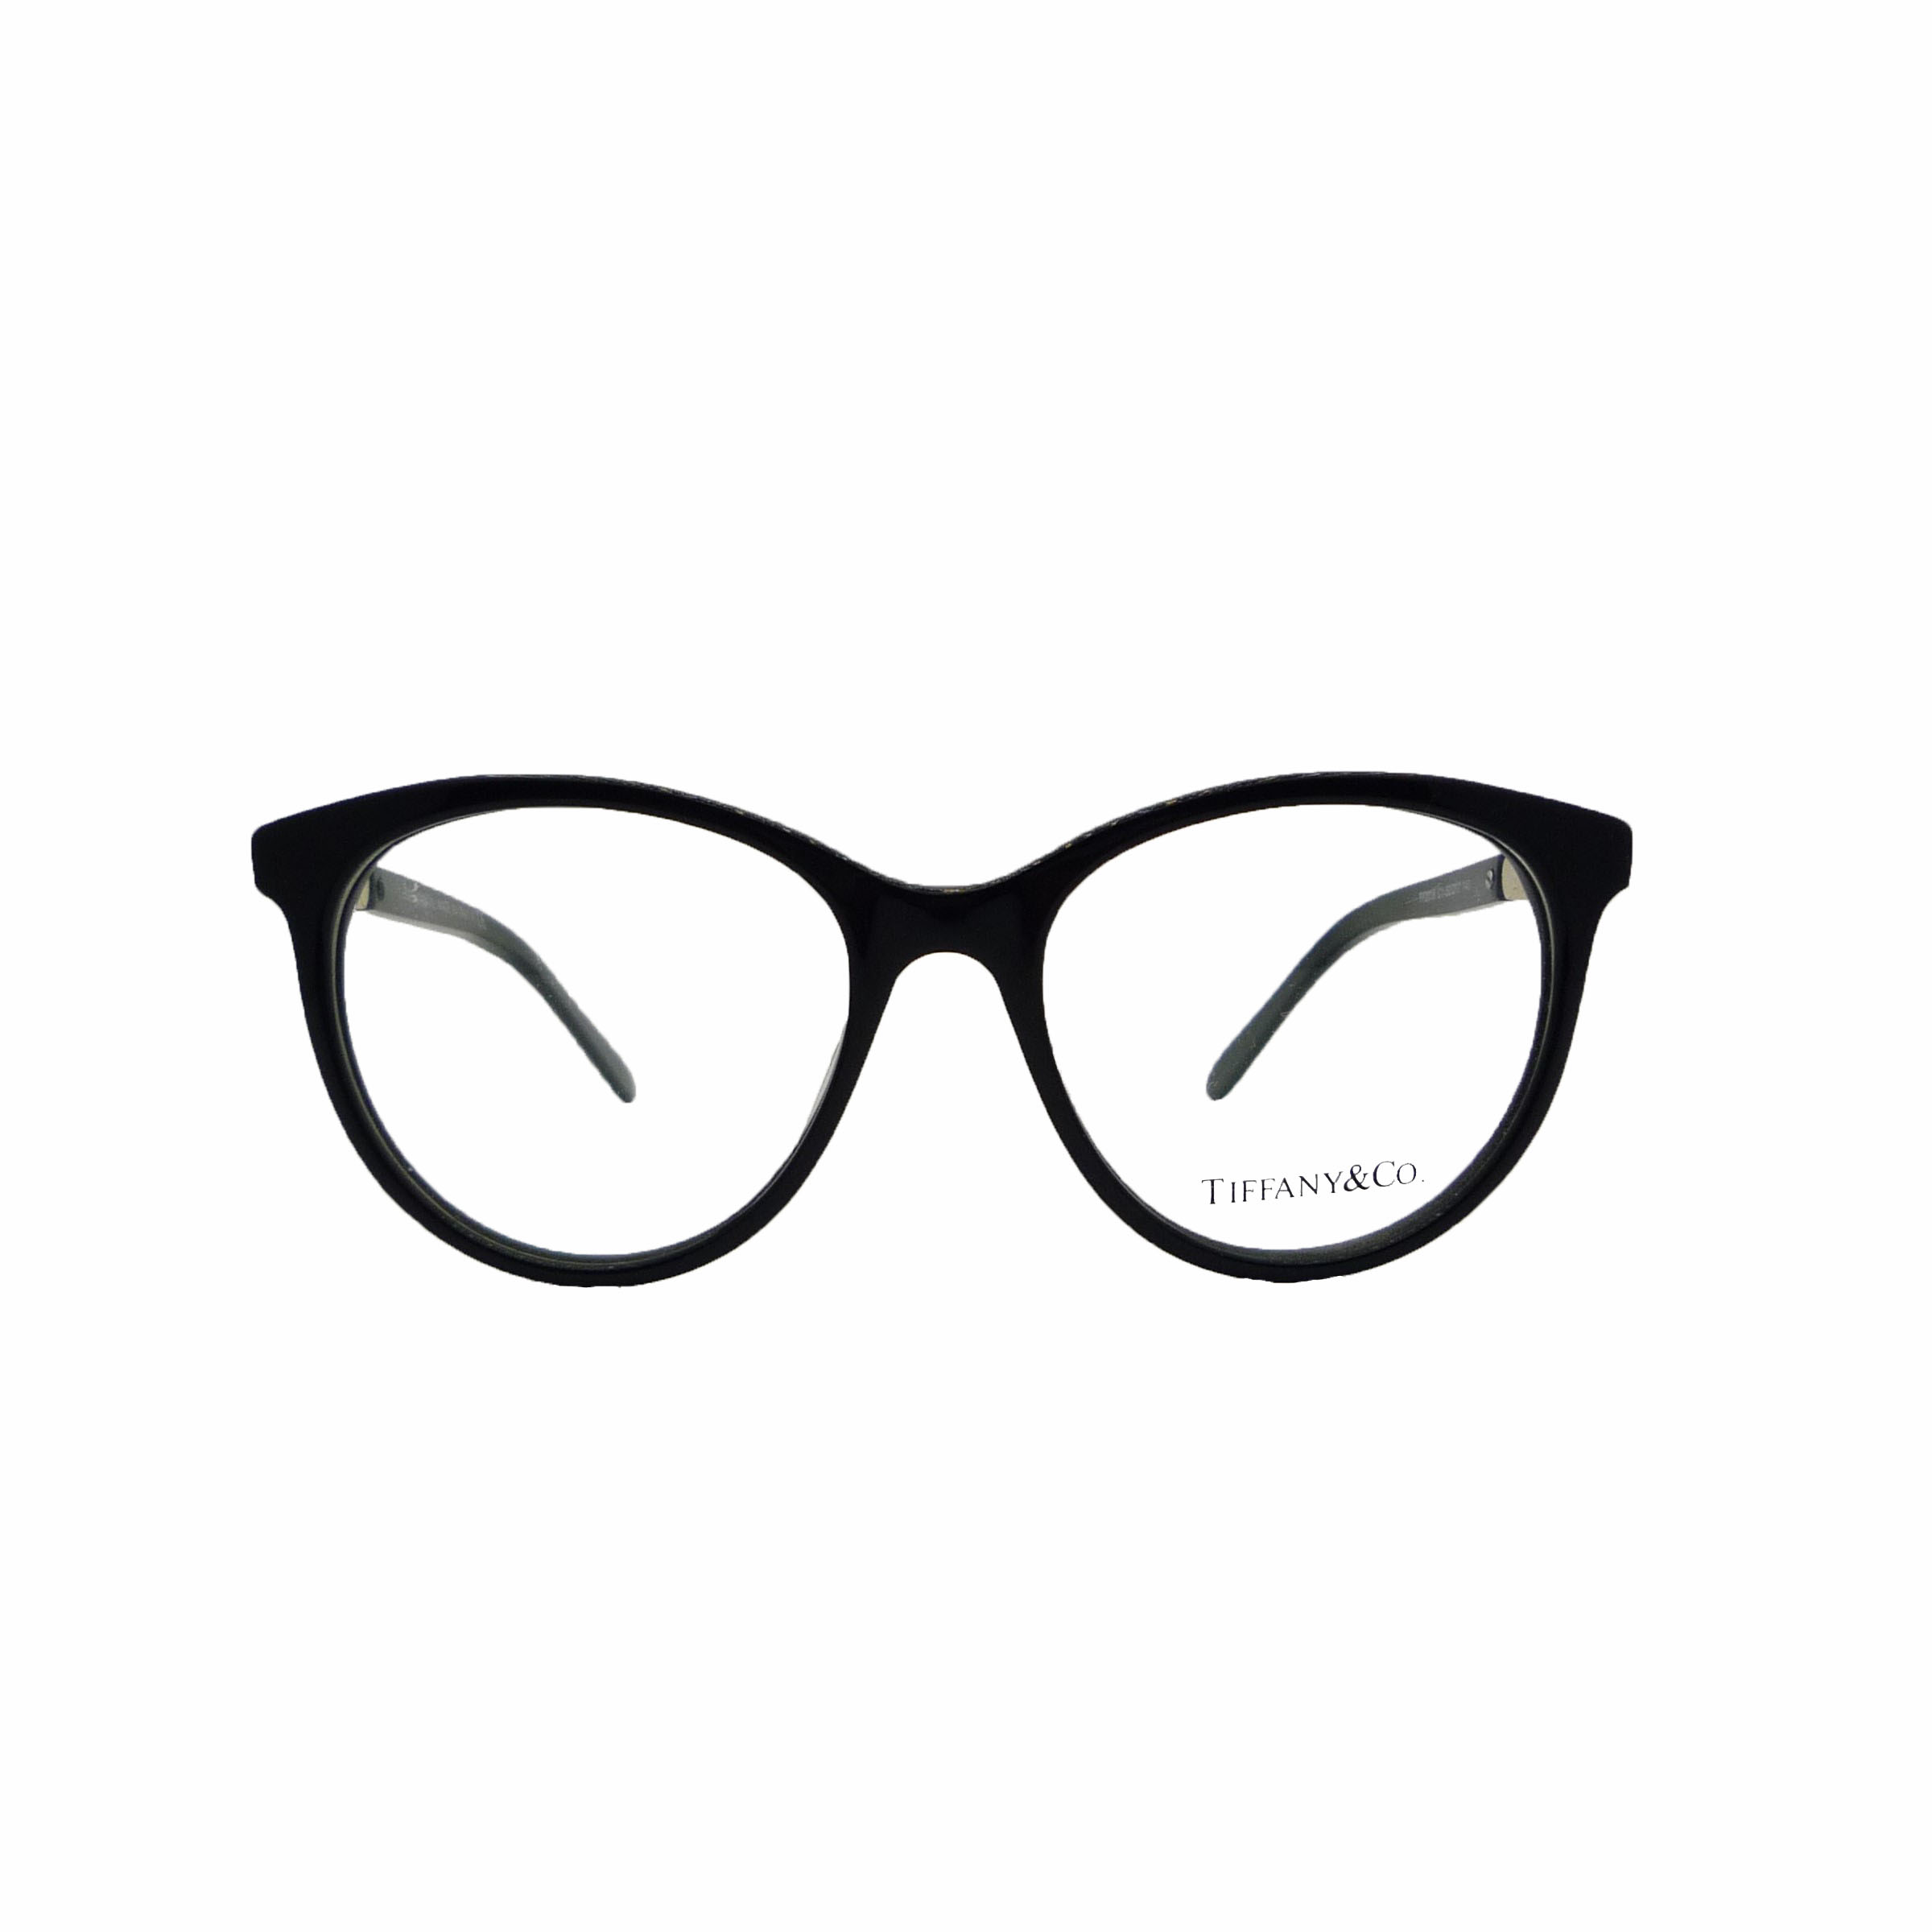 فریم عینک طبی تیفانی اند کو مدل T2054-TF2018